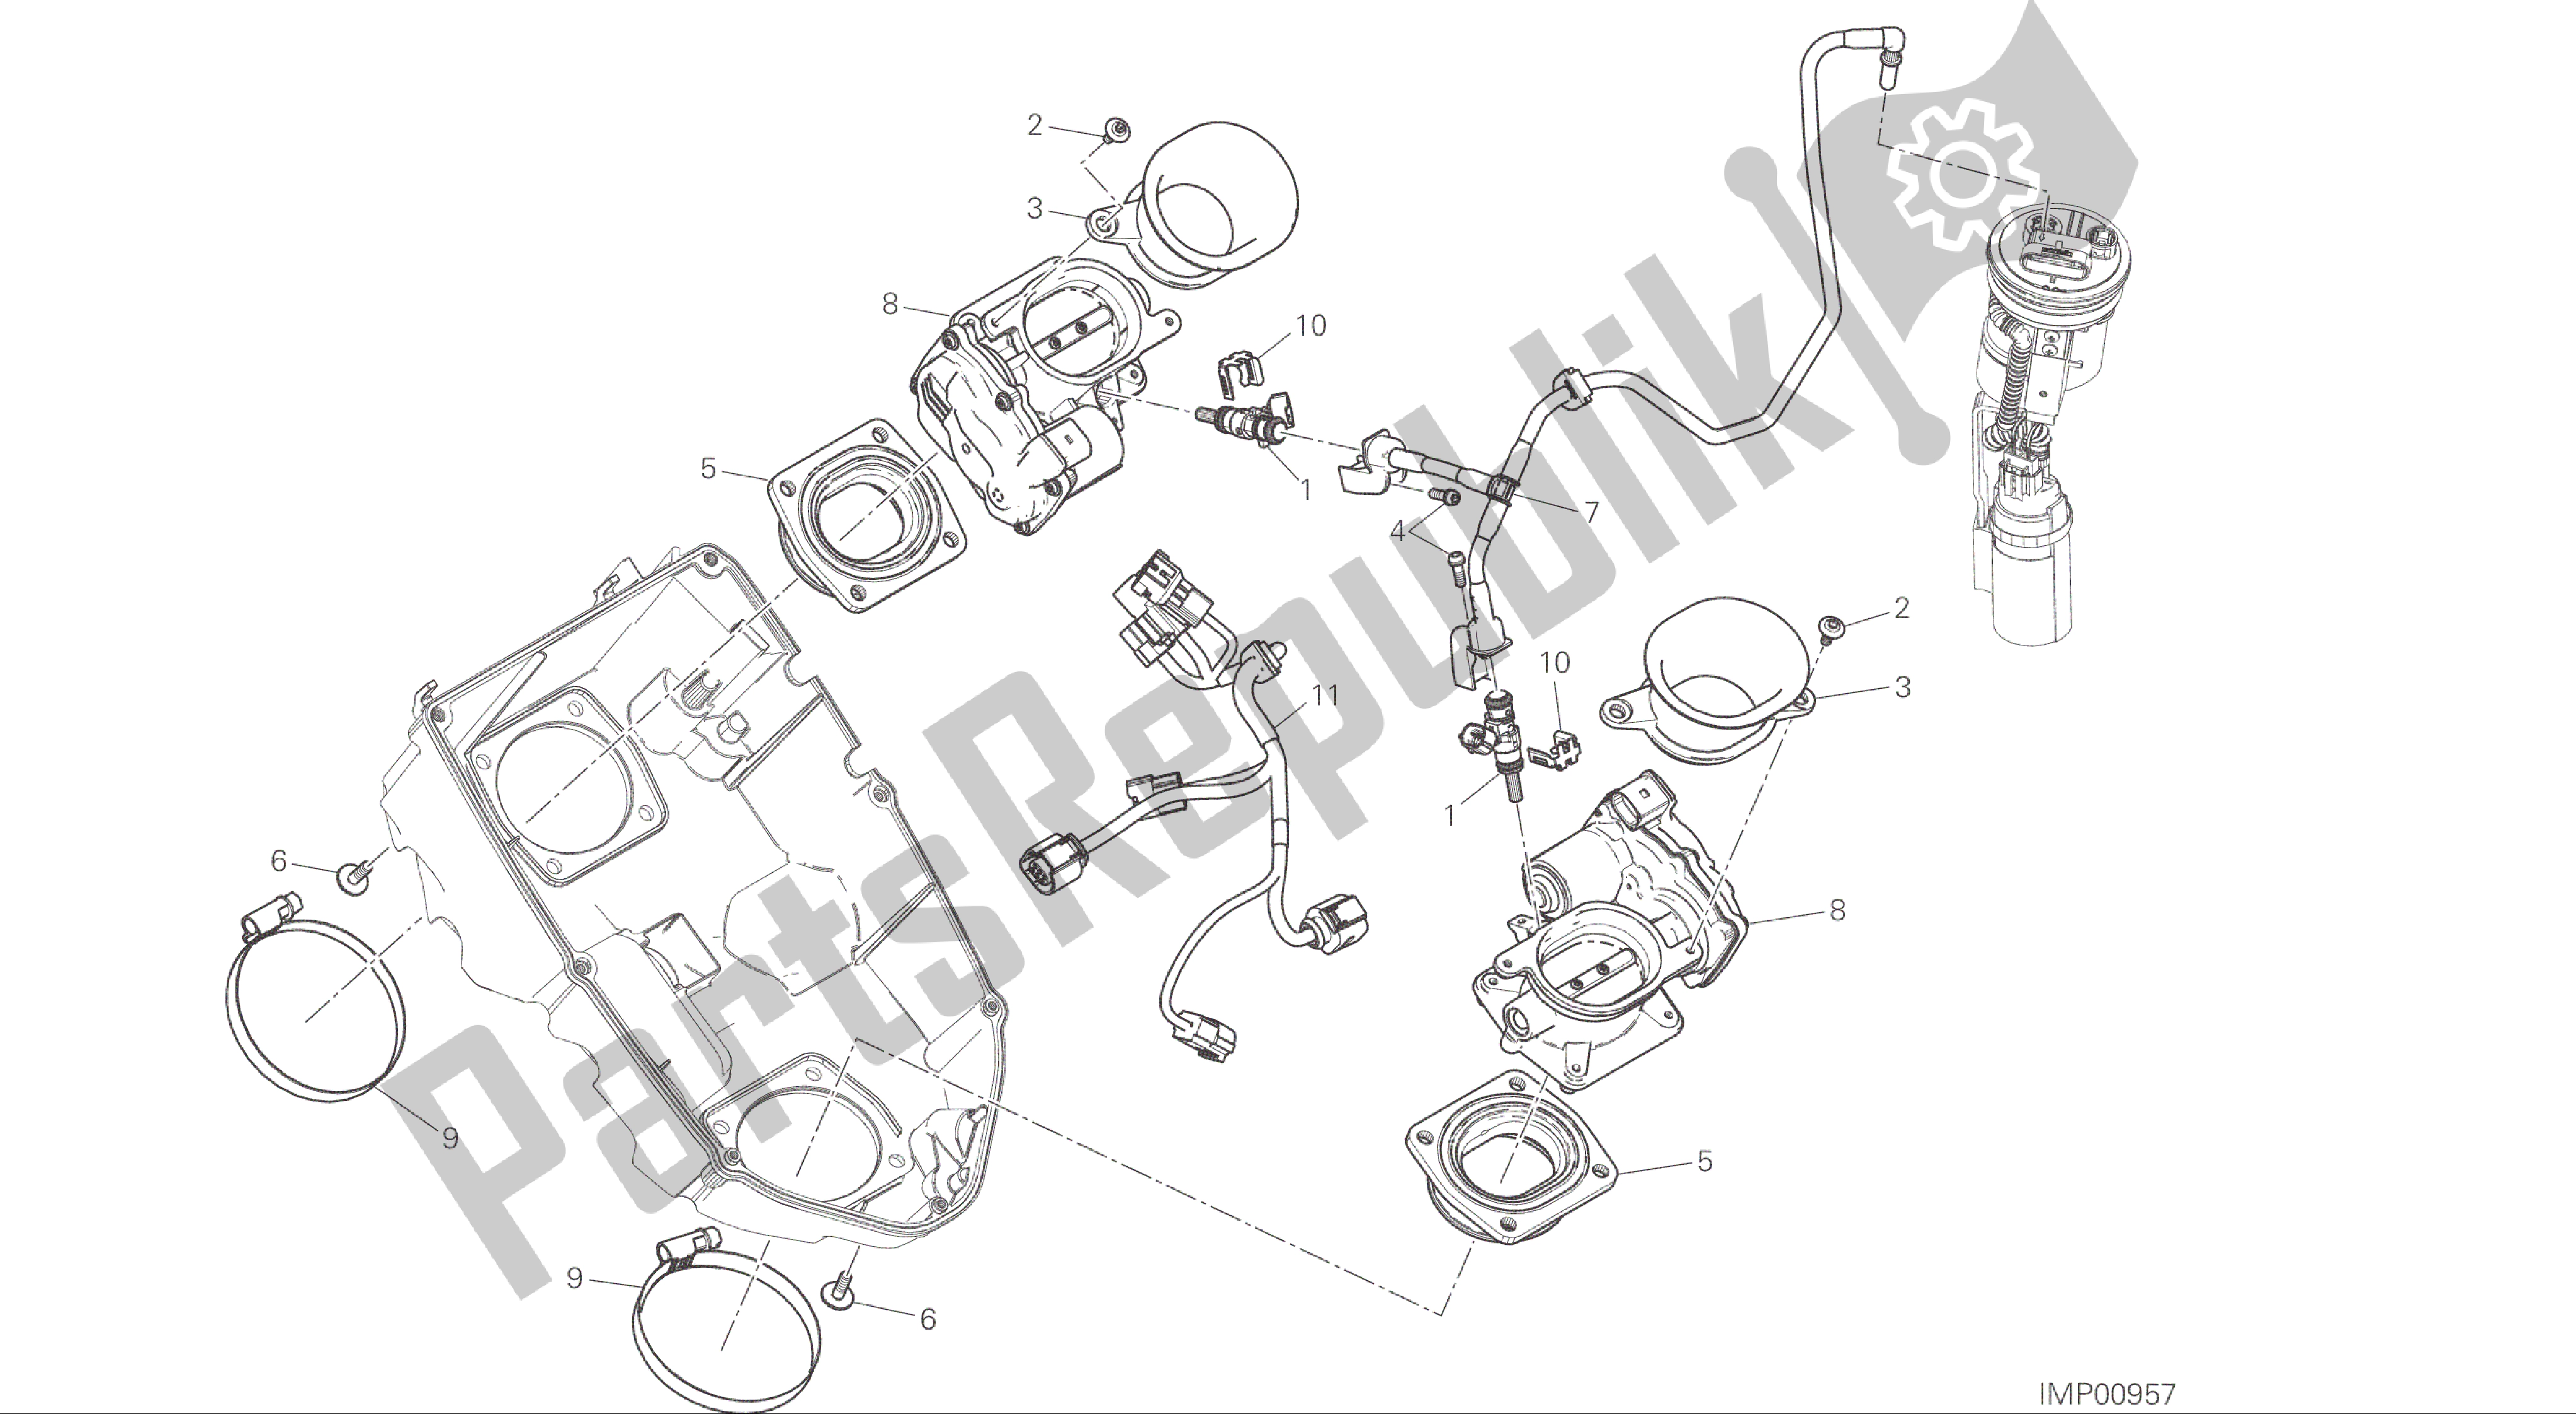 Alle onderdelen voor de Tekening 017 - Gasklephuis [mod: Ms1200; Xst: Aus, Eur, Fra, Jap] Groep Engine van de Ducati Multistrada 1200 2015